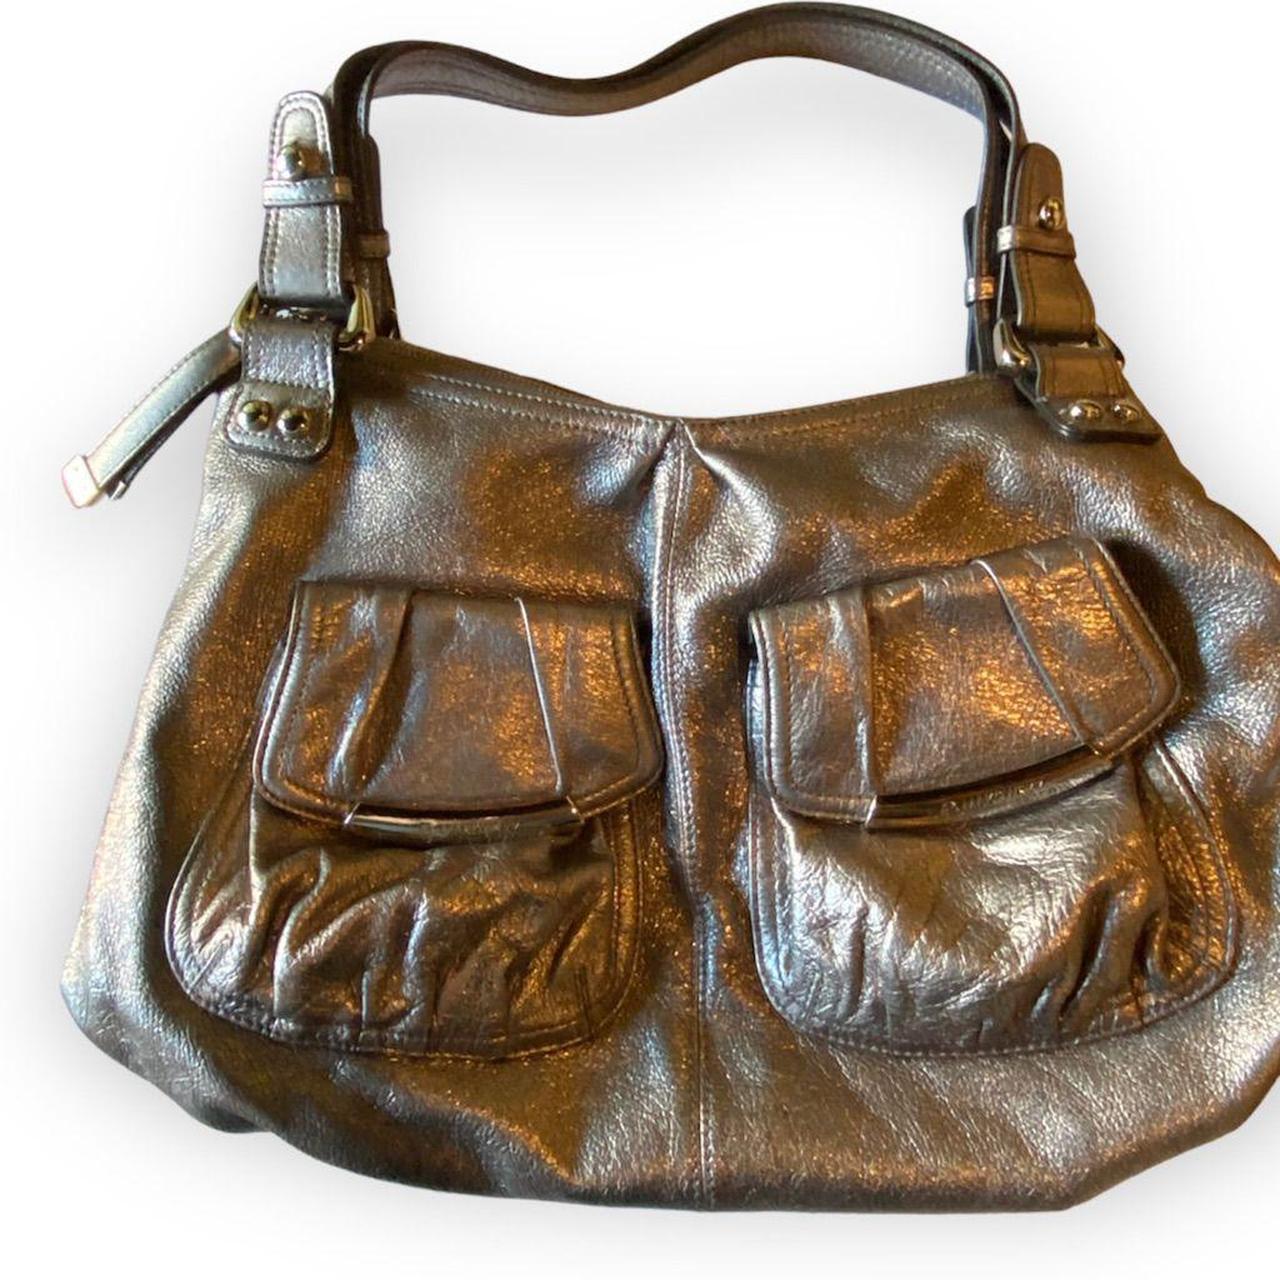 Sold at Auction: Makowsky, Kooba & Other Designer Handbags